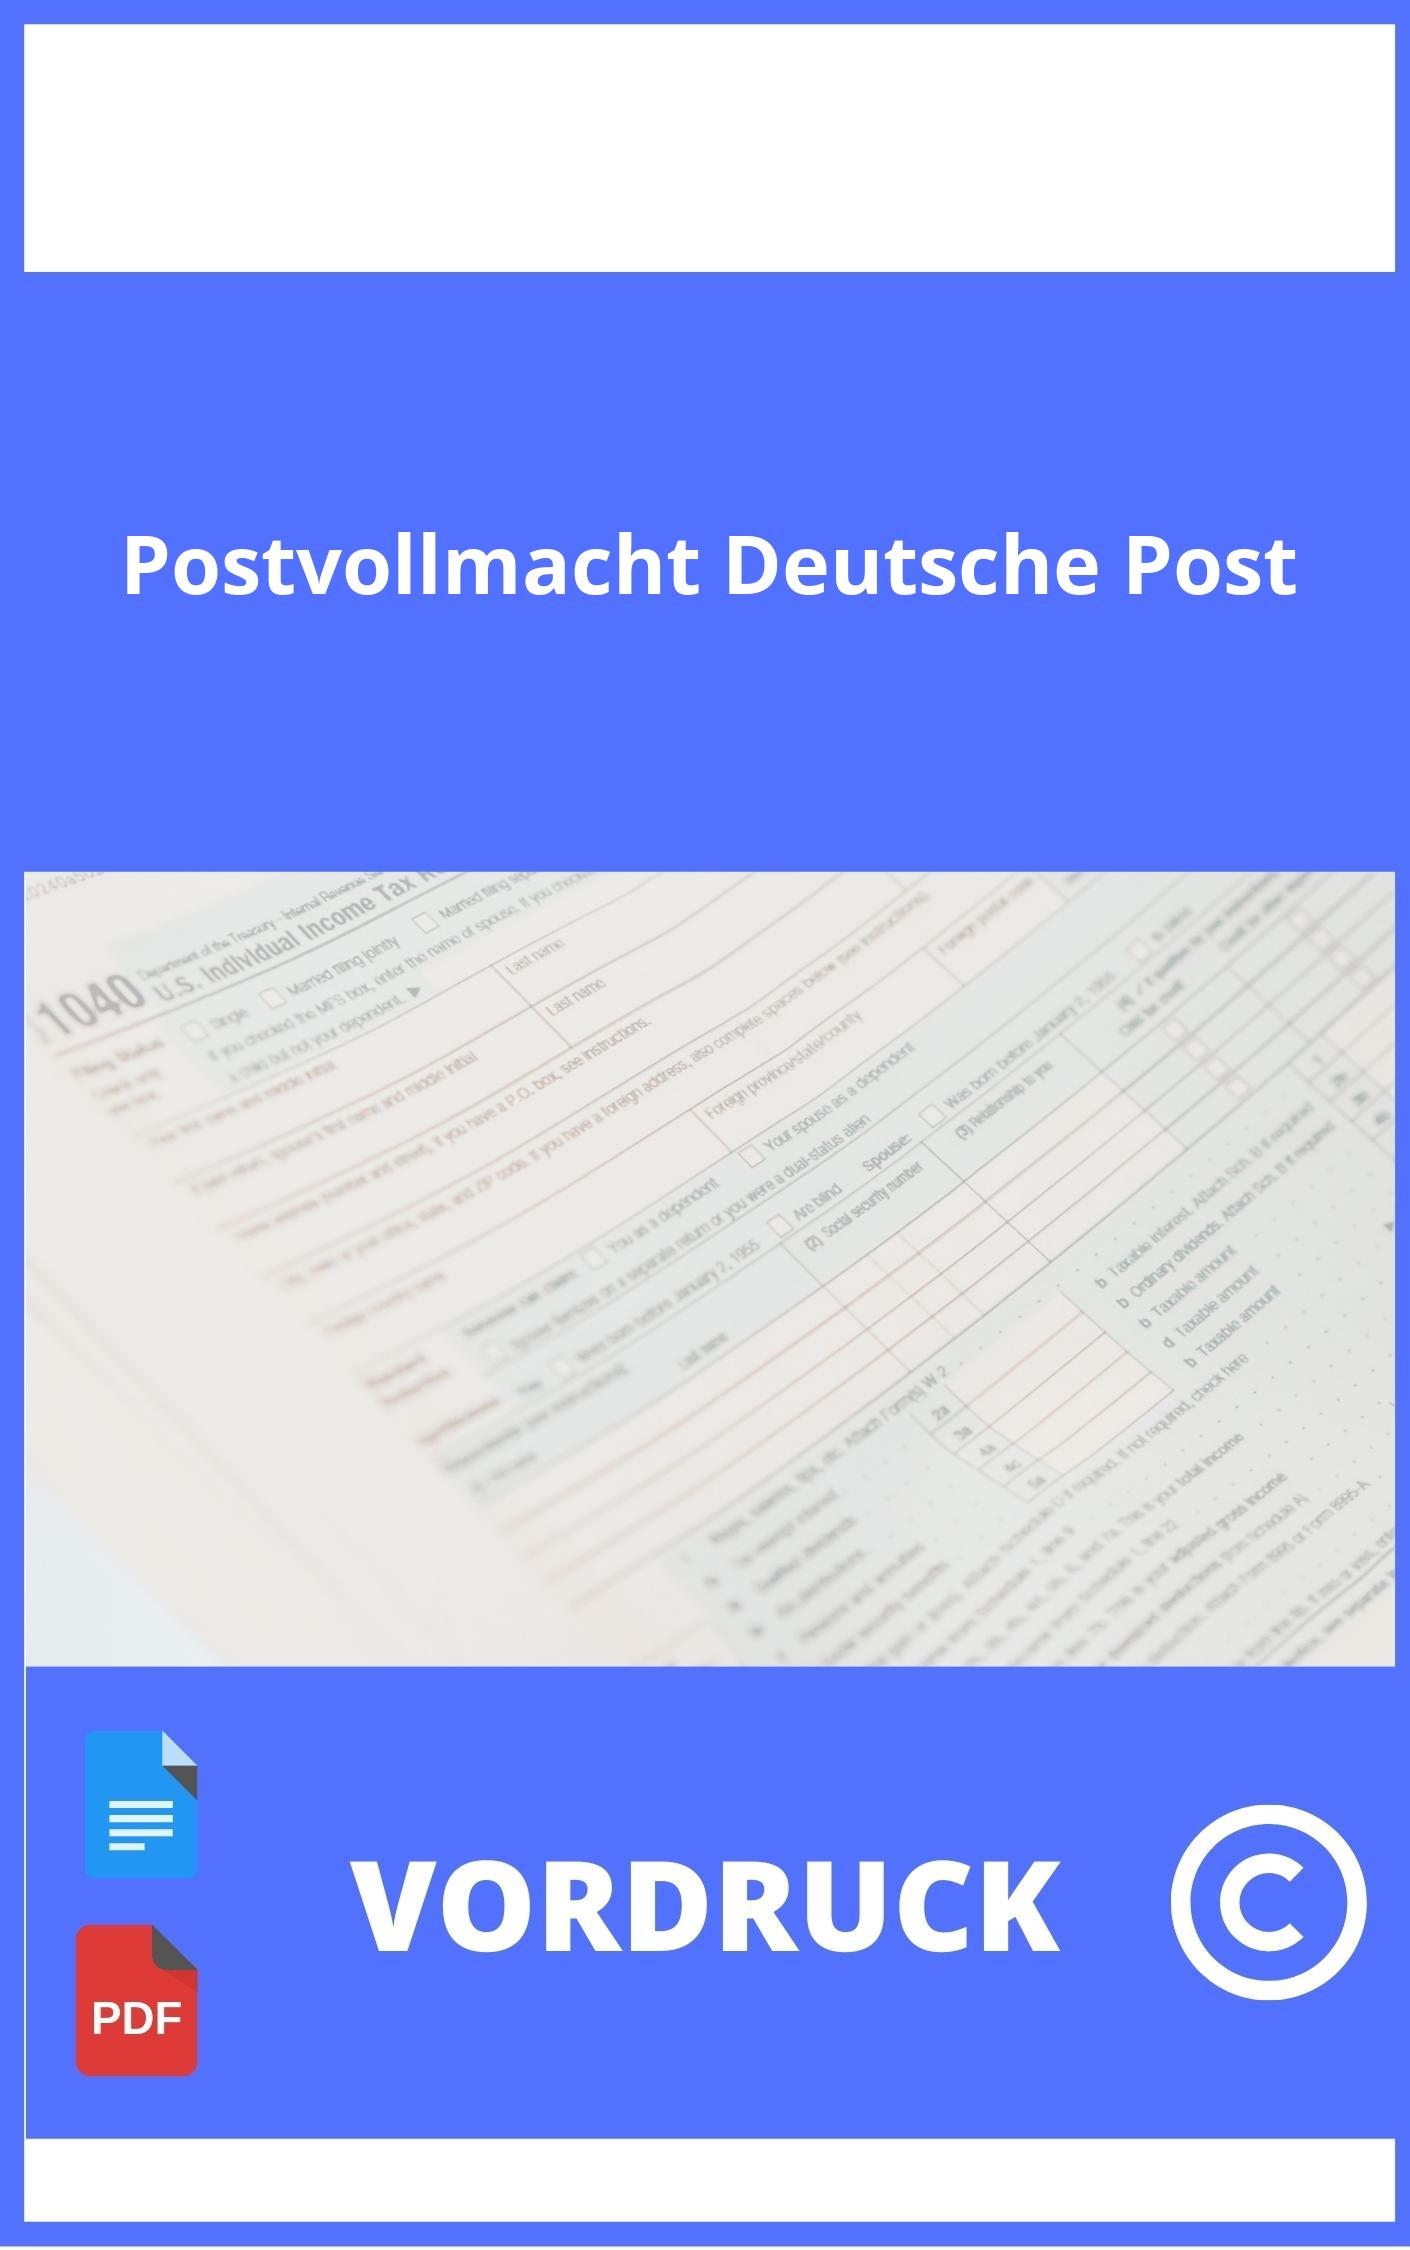 Postvollmacht Vordruck Deutsche Post